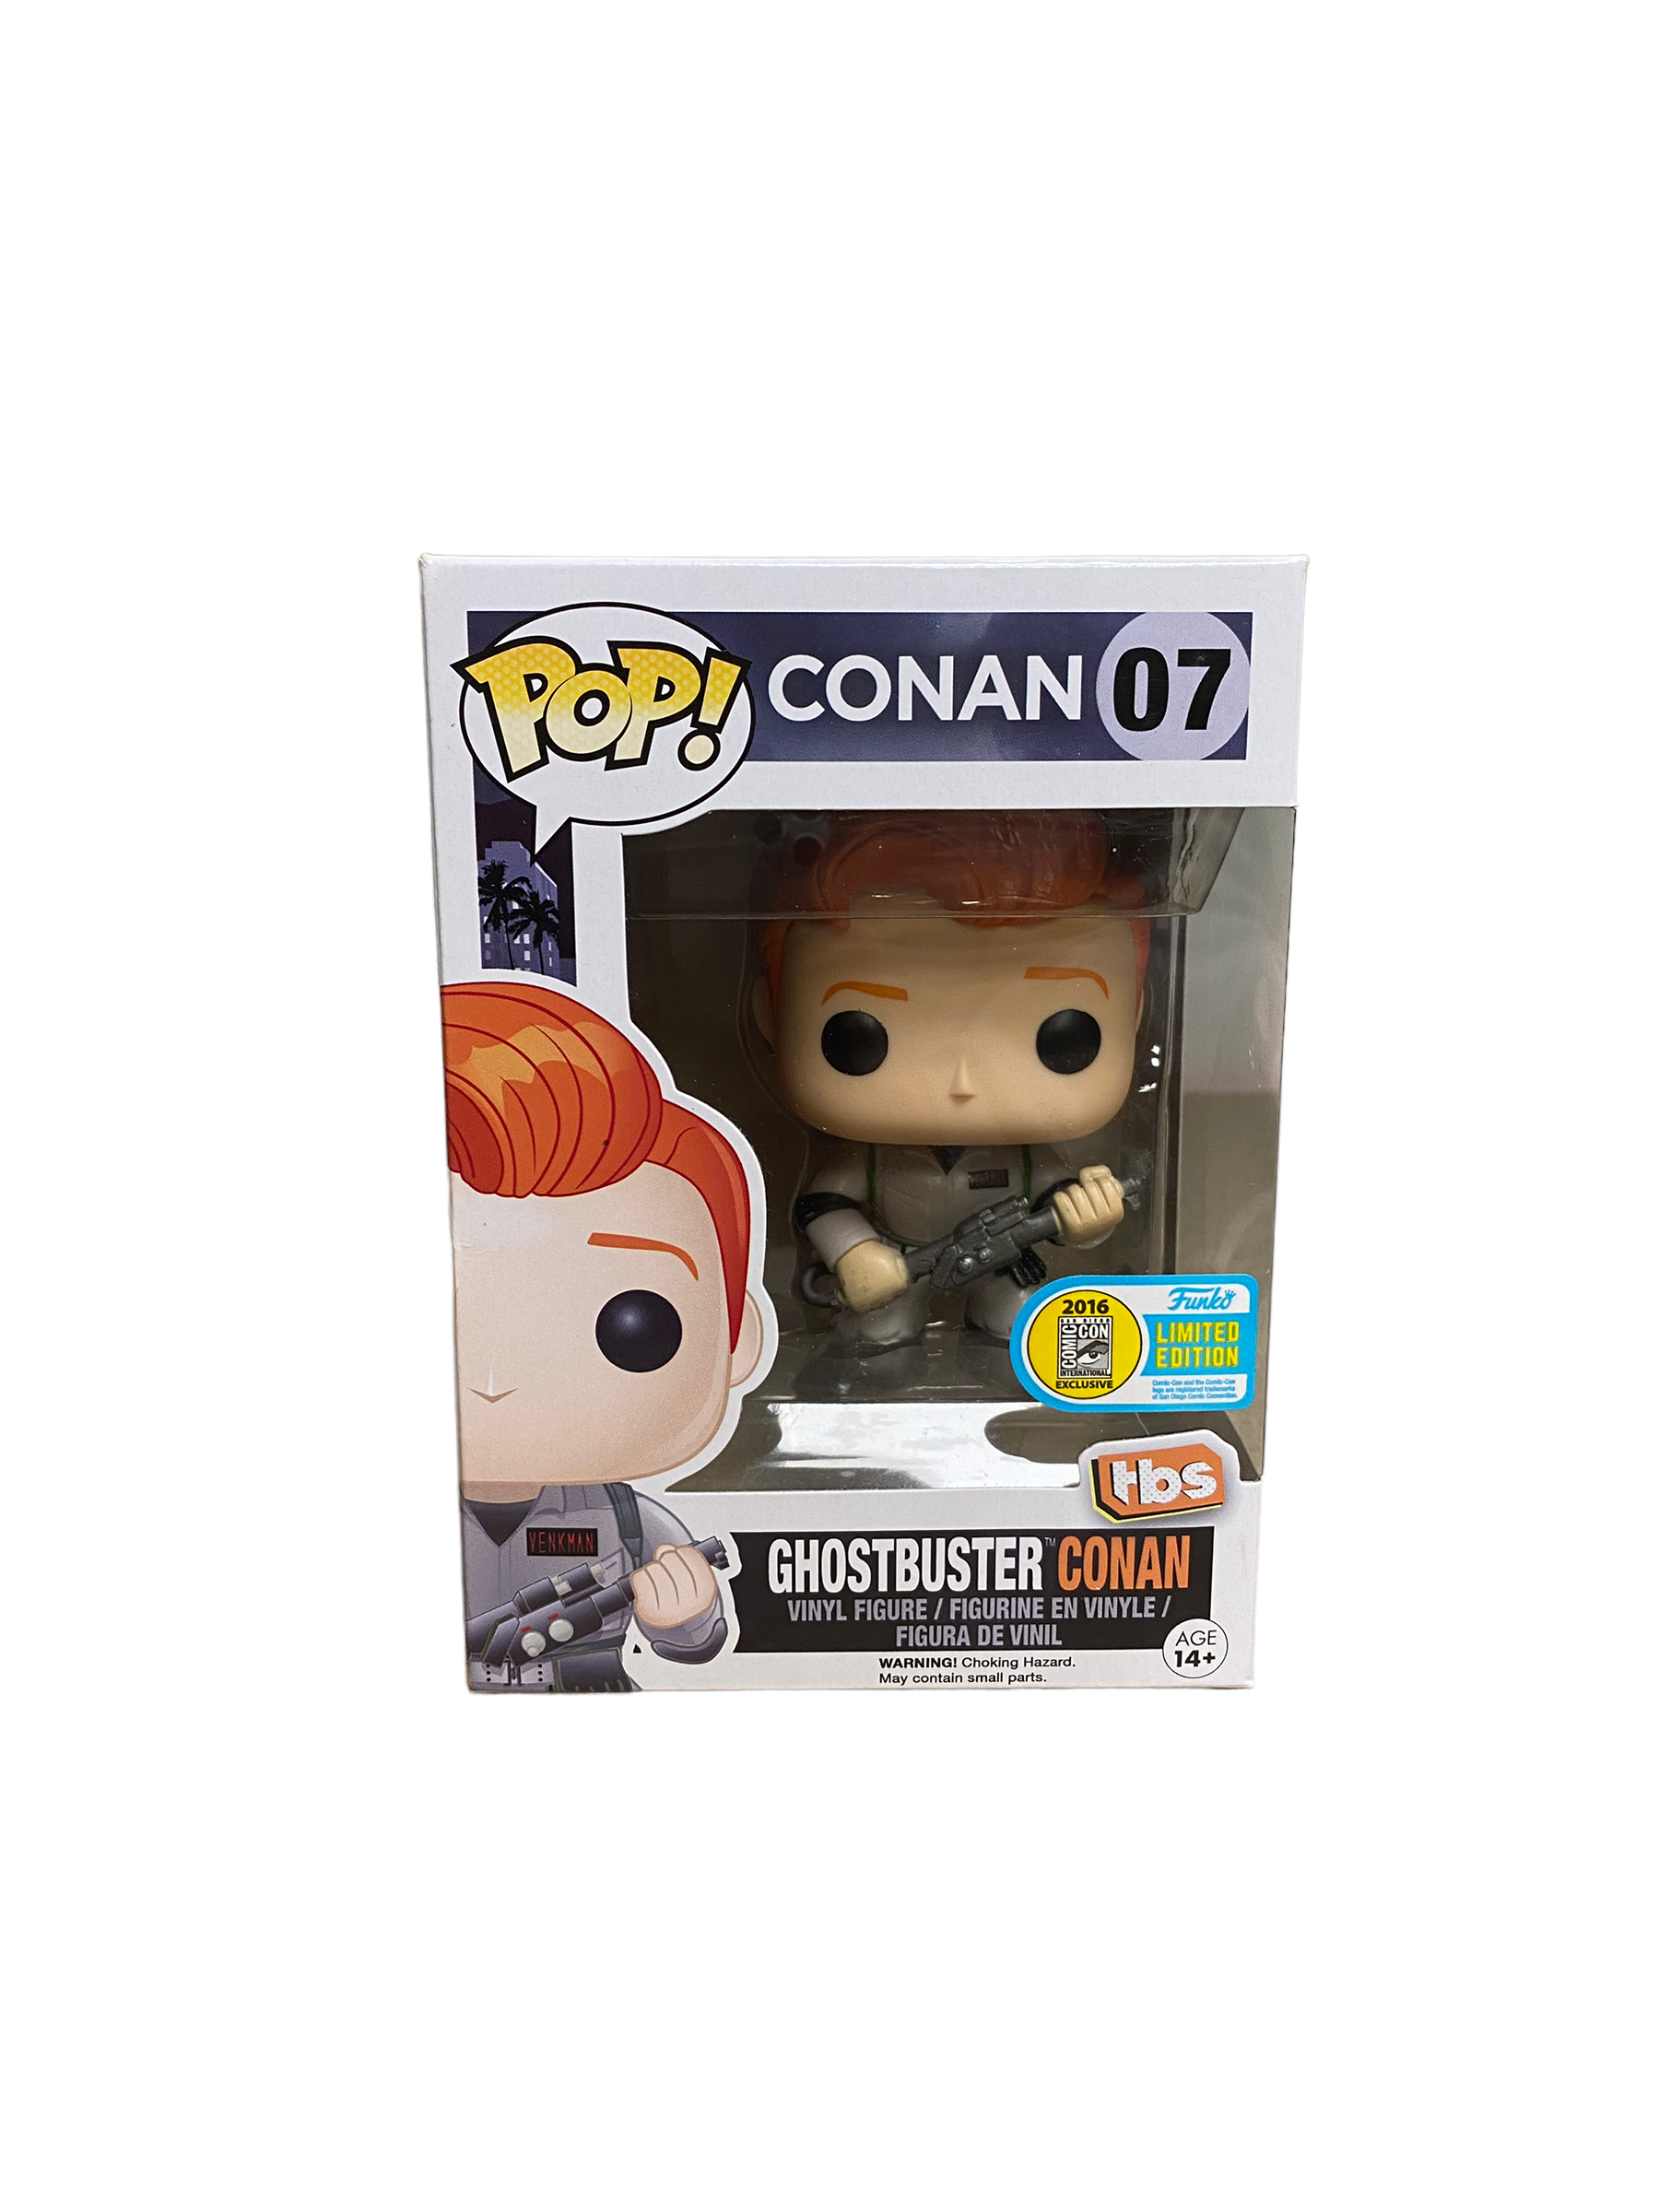 Ghostbuster Conan #07 Funko Pop! - Conan - SDCC 2016 Exclusive - Condition 7/10